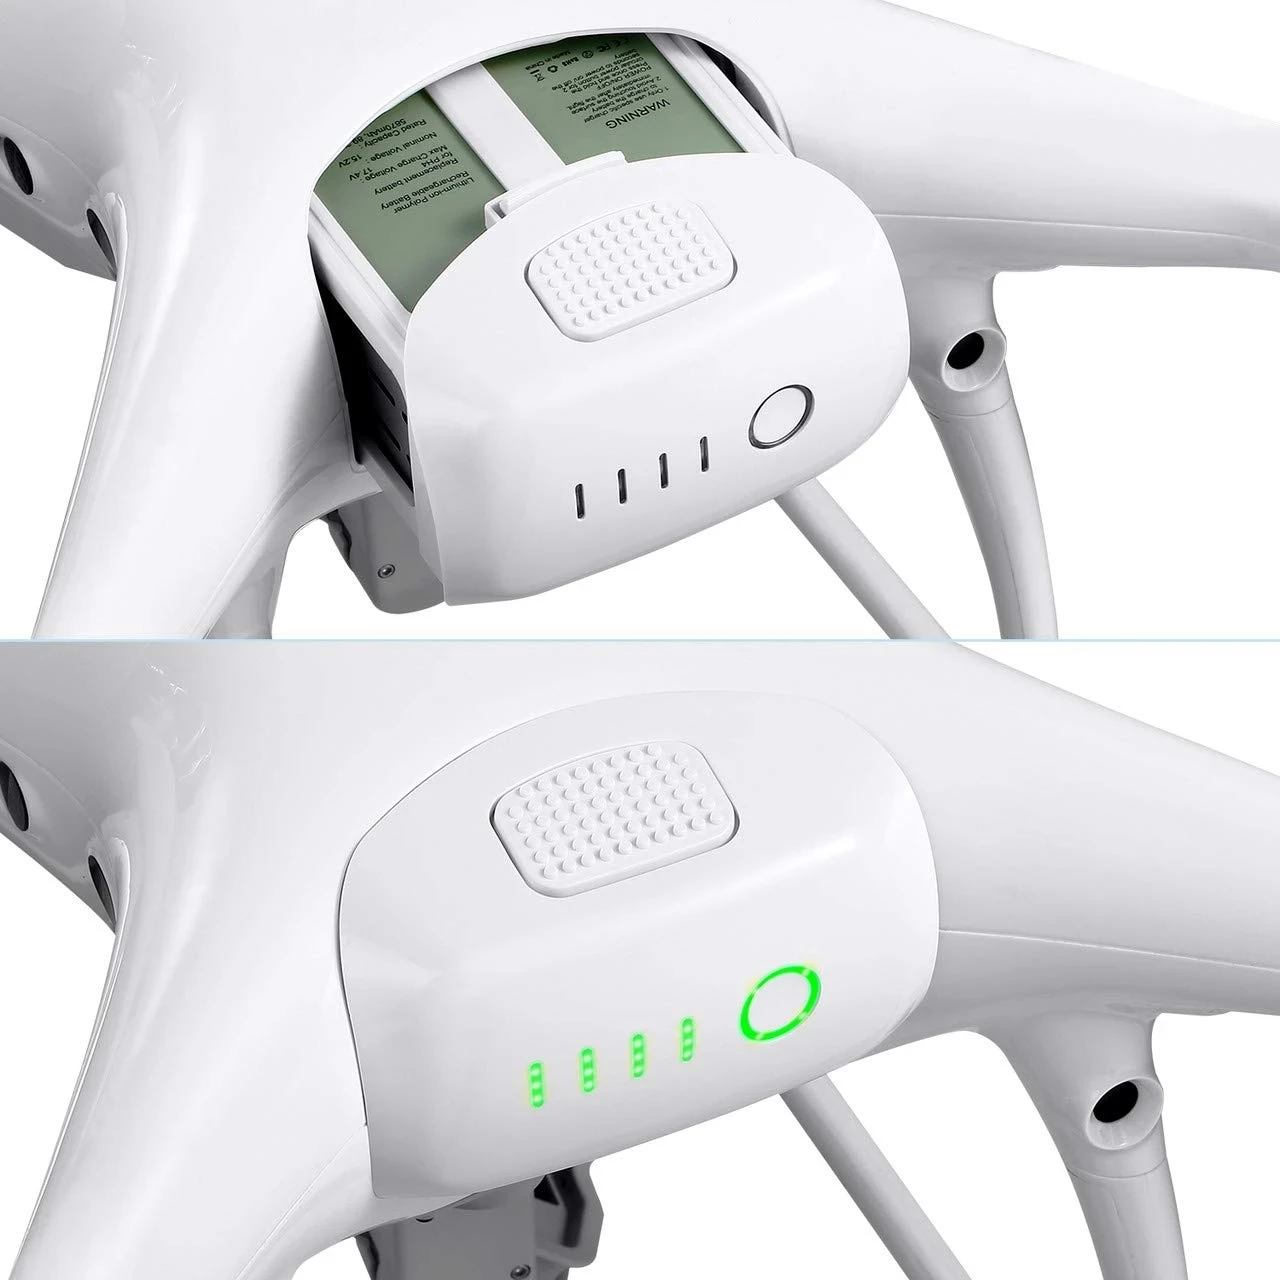 Für DJI Phantom 4 Erweiterte 4Pro V 2.0 RTK hohe kapazität intelligente flug batterie15.2V 5870mAh Neue OEM DJI drone zubehör5